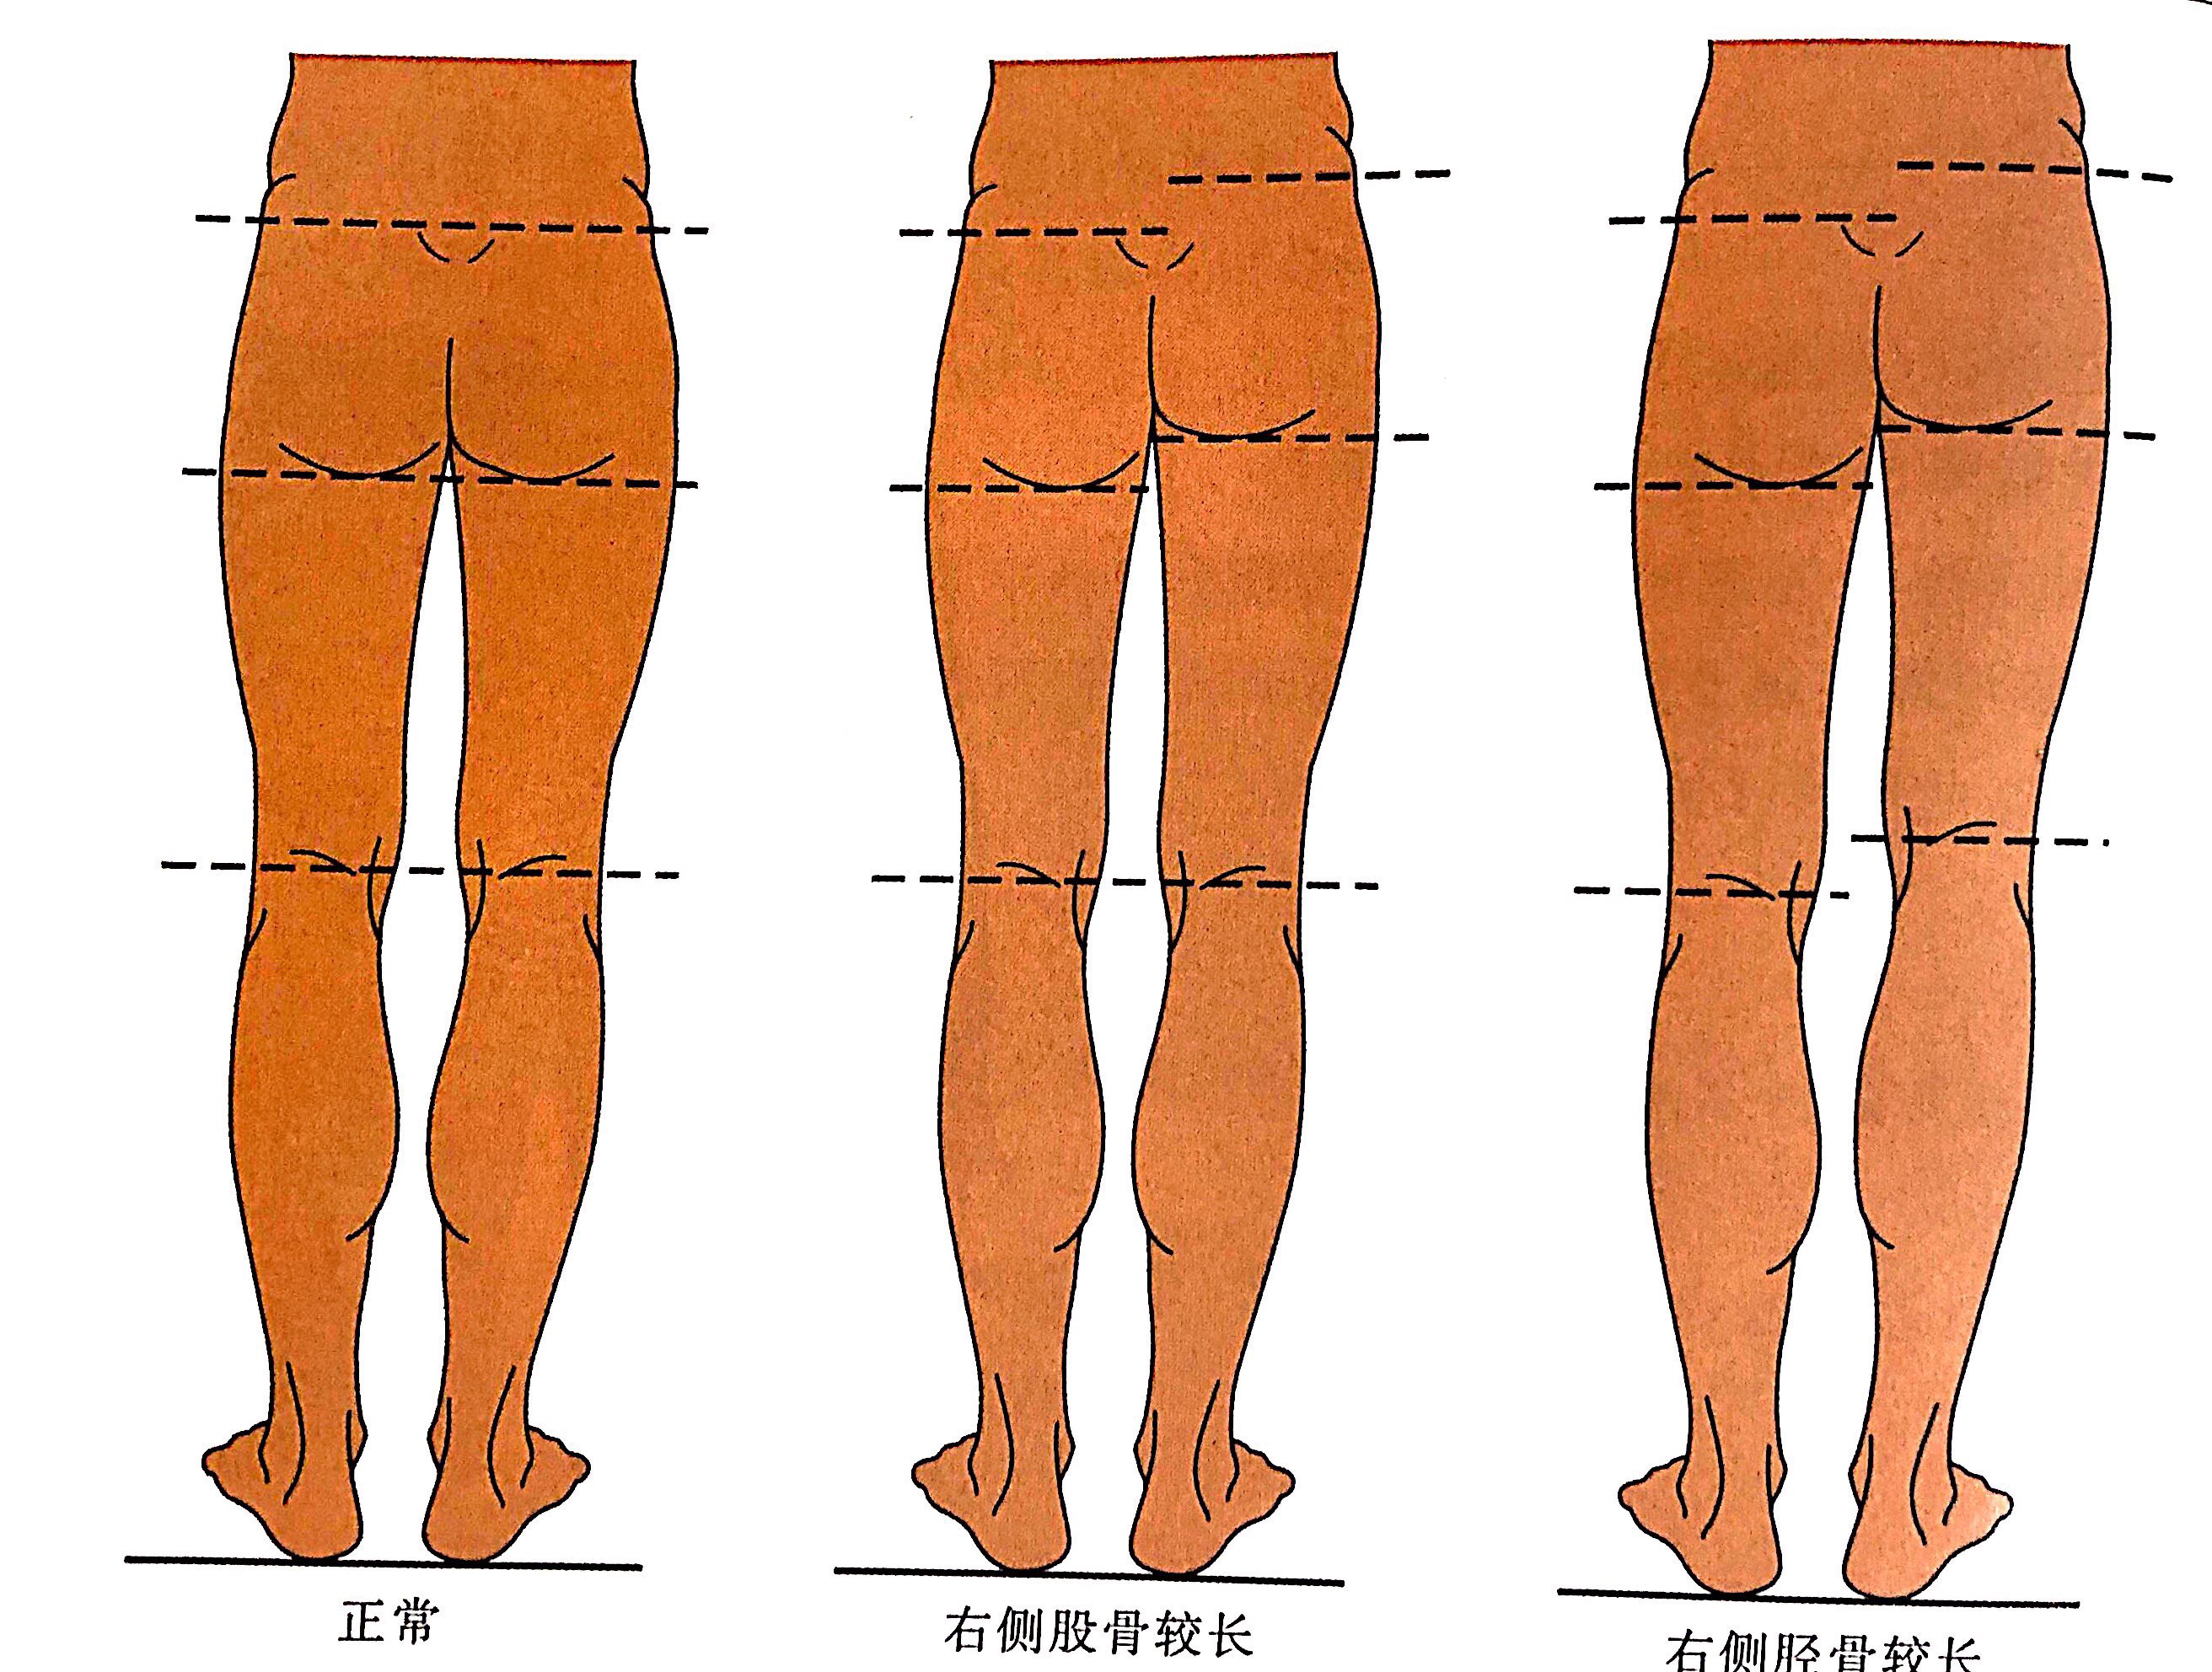 中讲到的,若受试者右侧的骨盆向上倾斜,那么他左侧的臀位线将相对更深